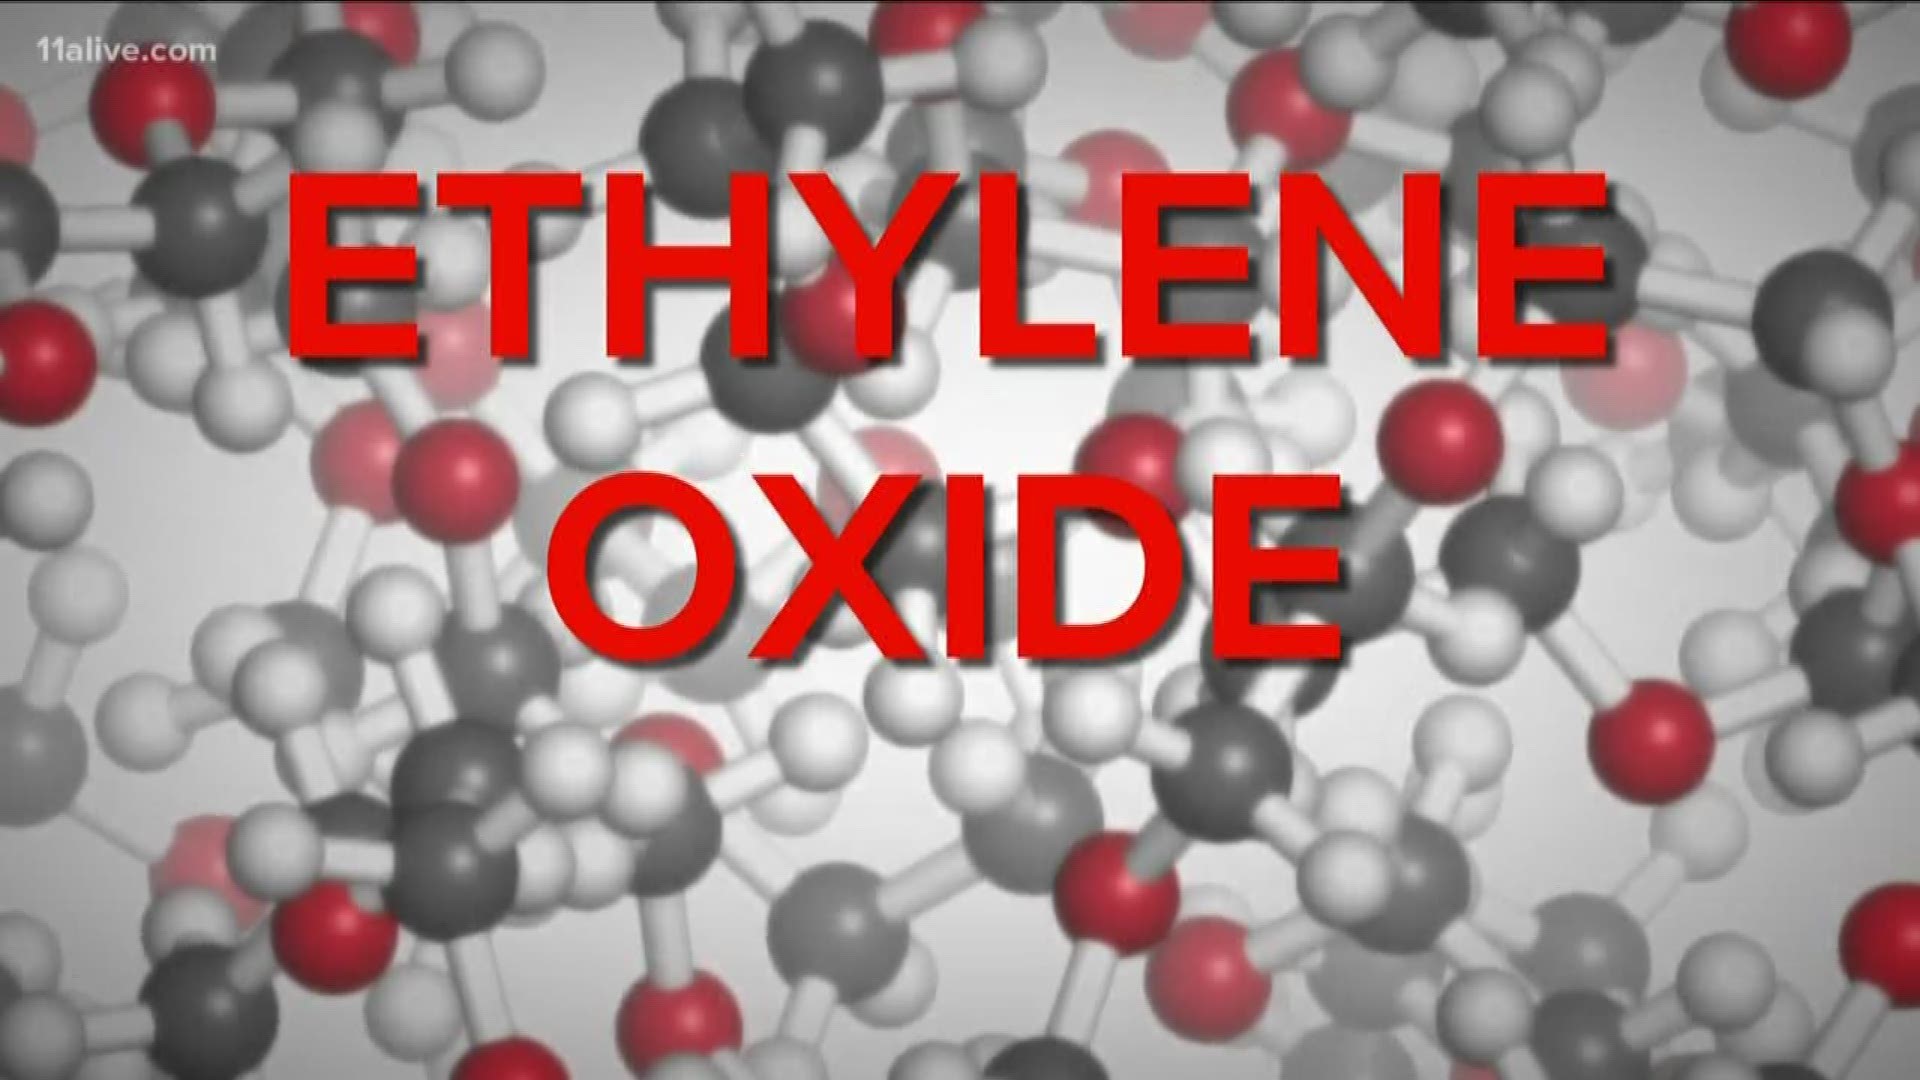 Here is a breakdown of ethylene oxide.